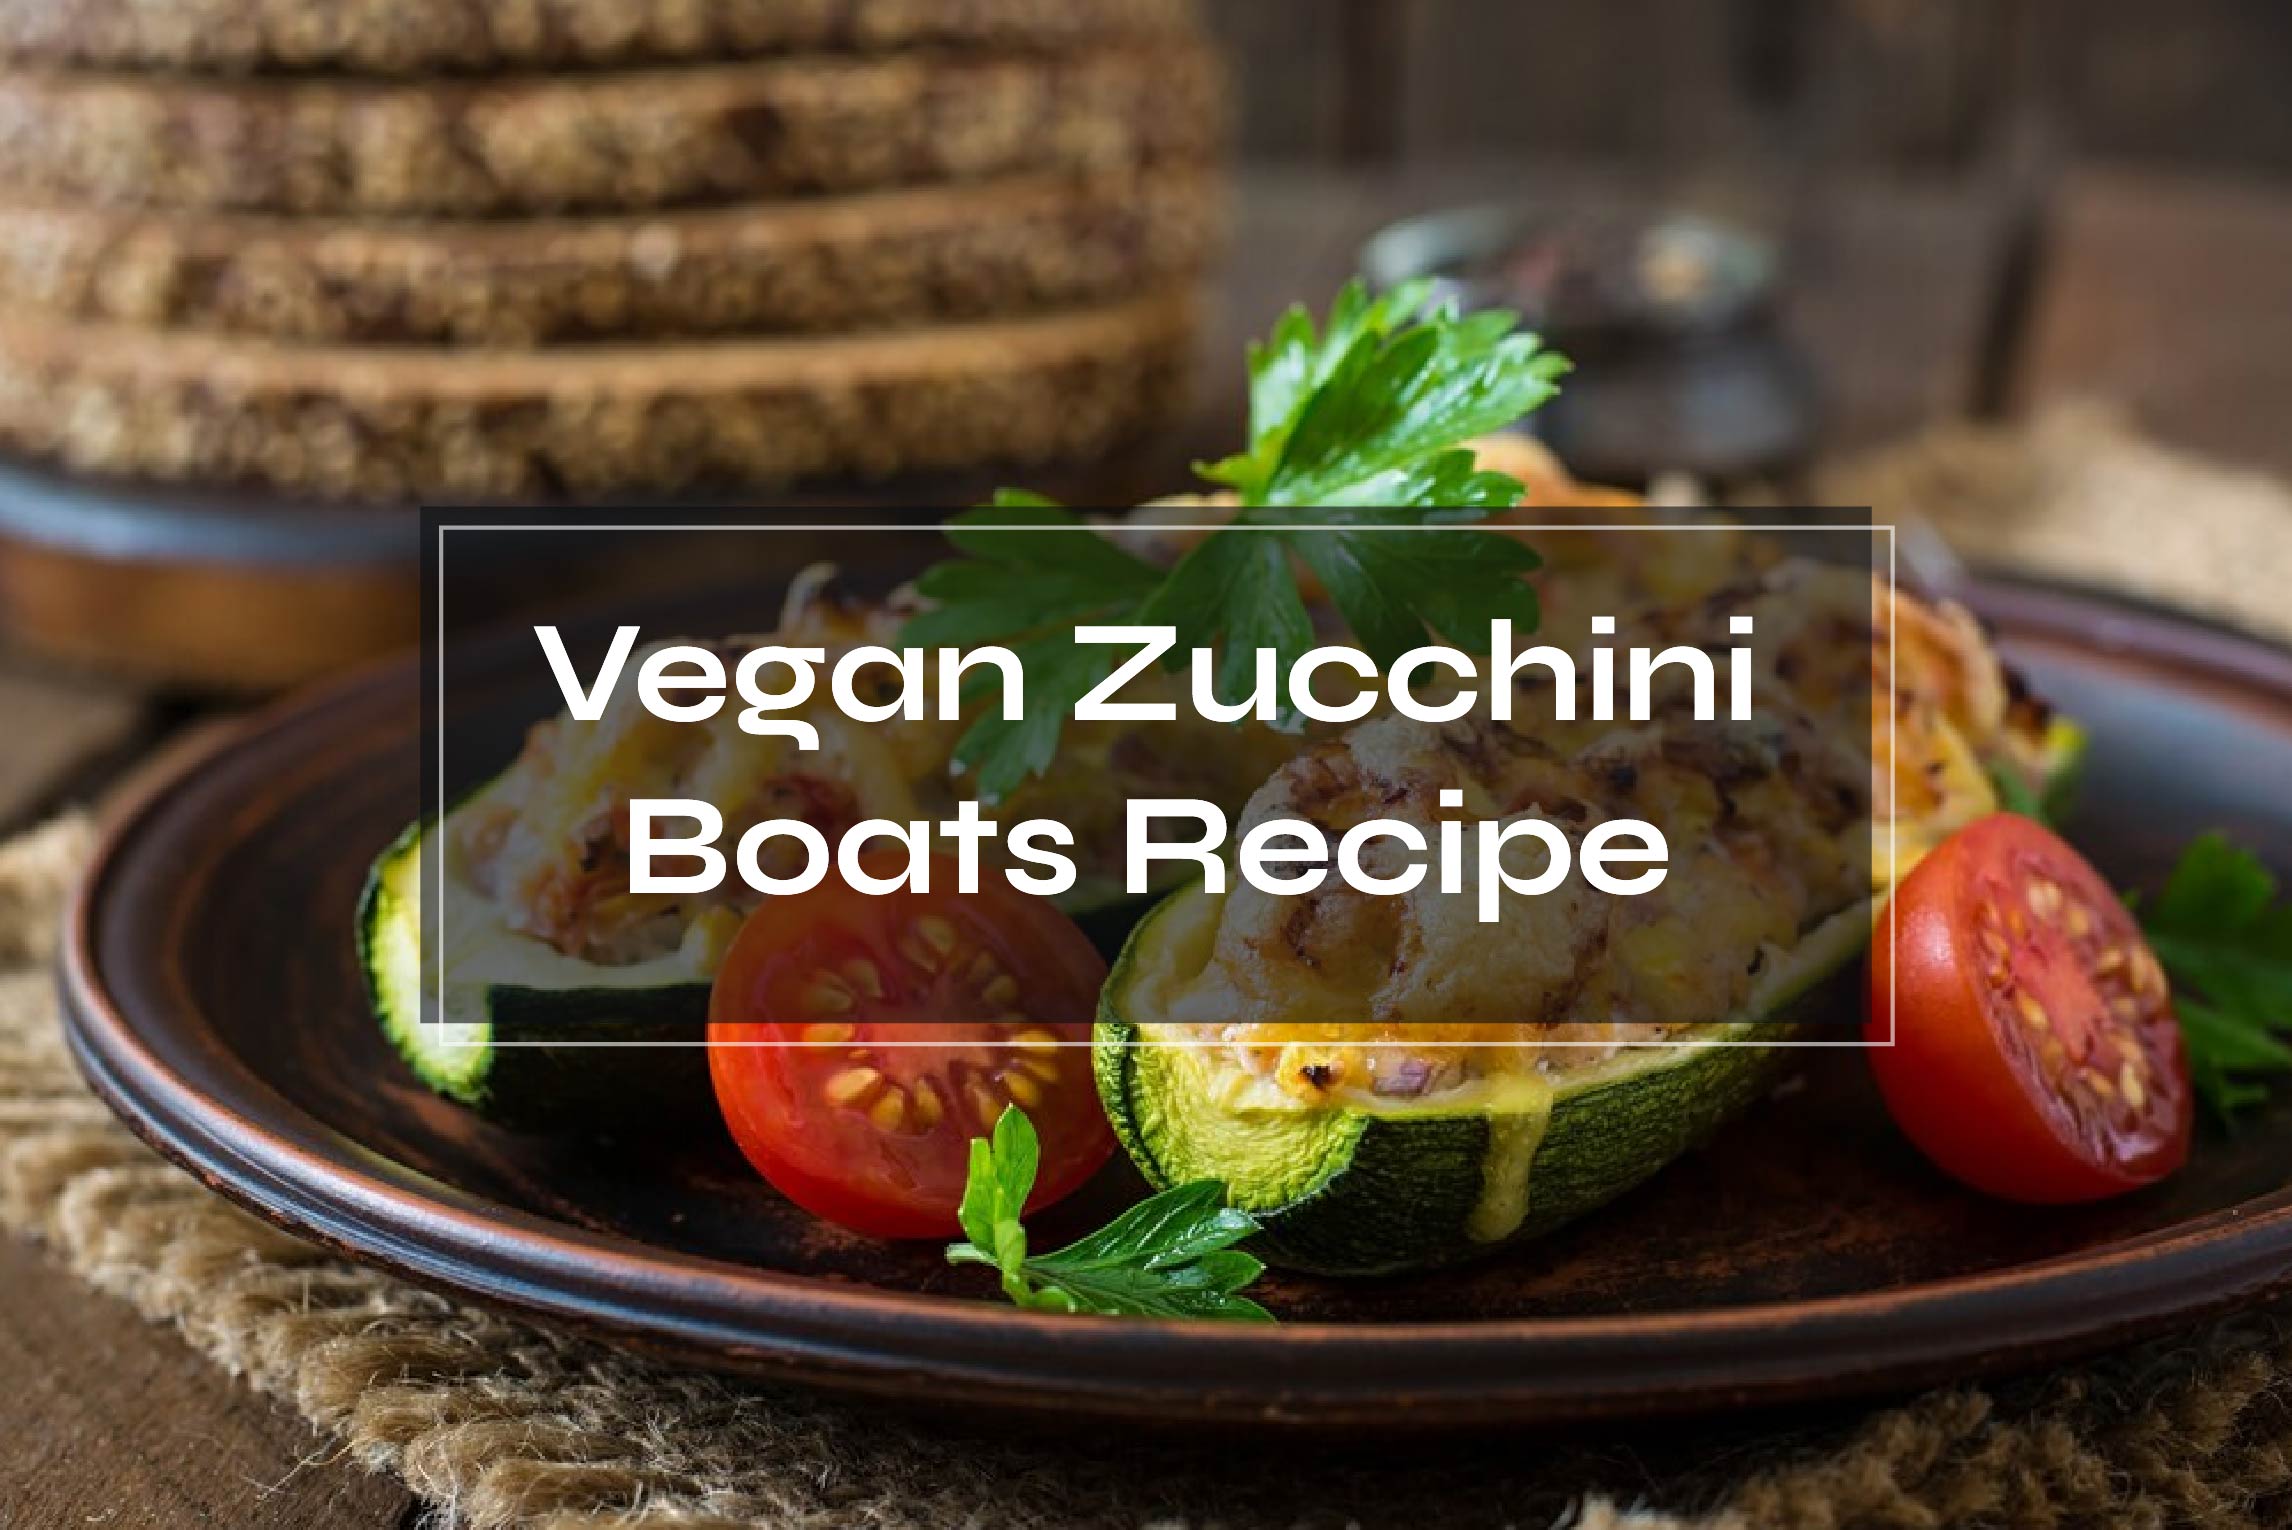 Vegan Zucchini Boats Recipe